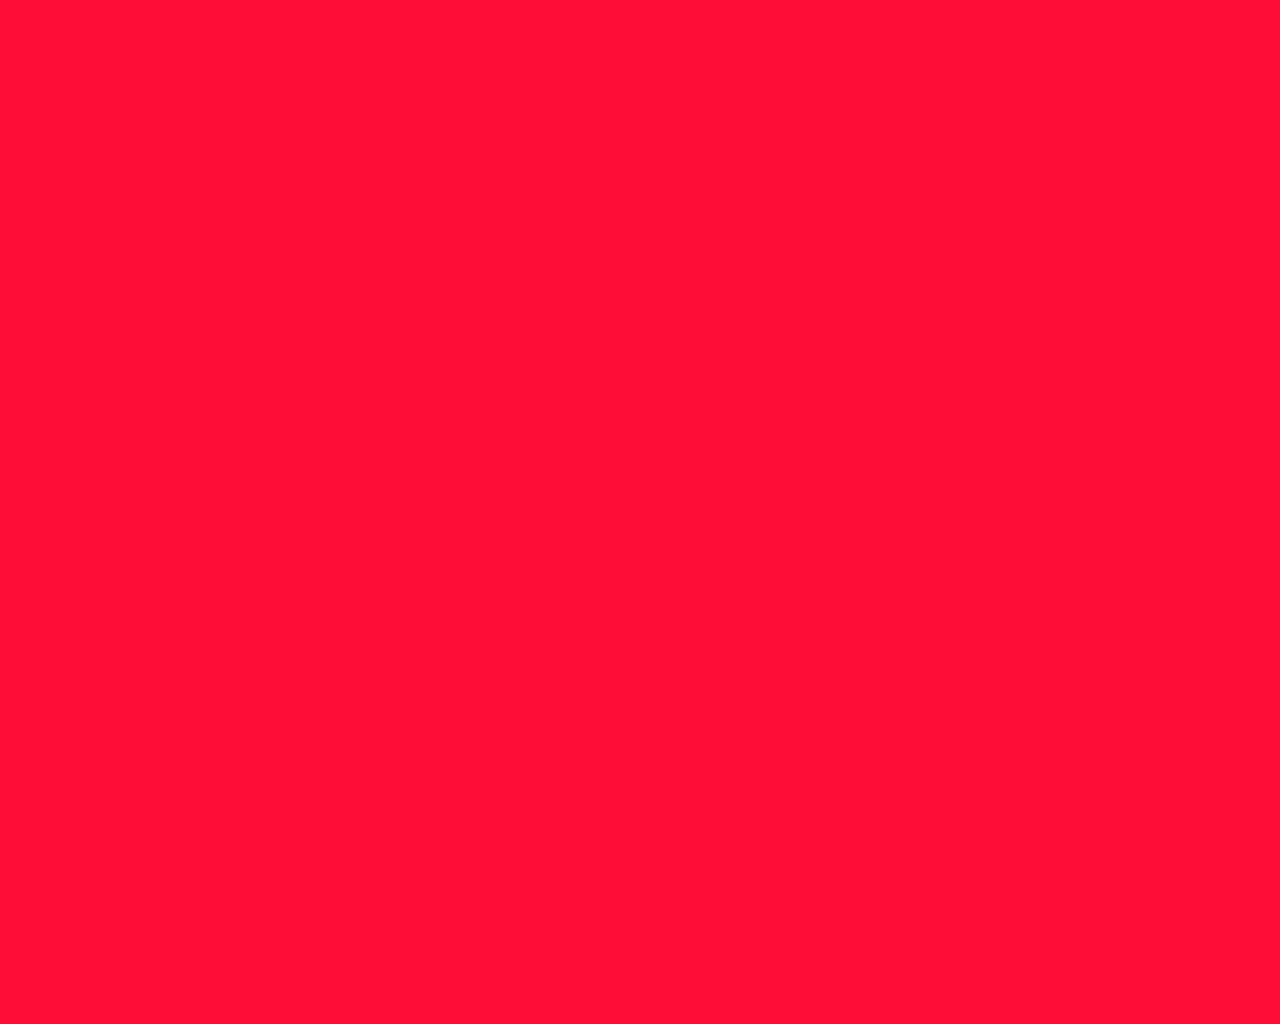 1280x1024 Scarlet Crayola Solid Color Background